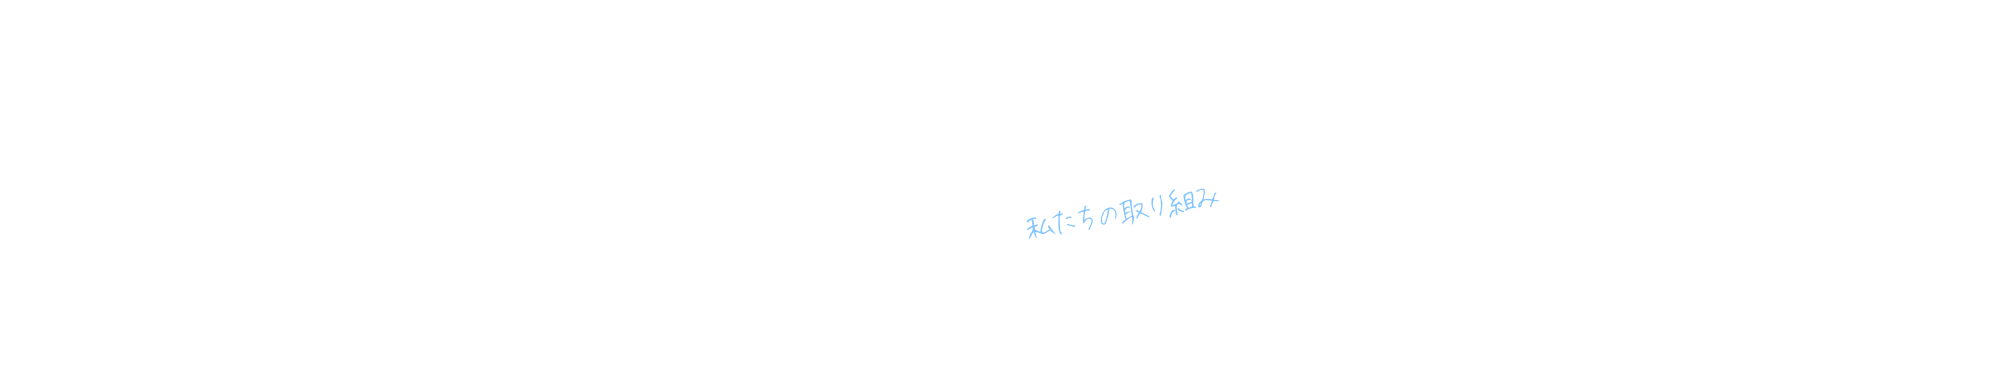 attempt_bnr